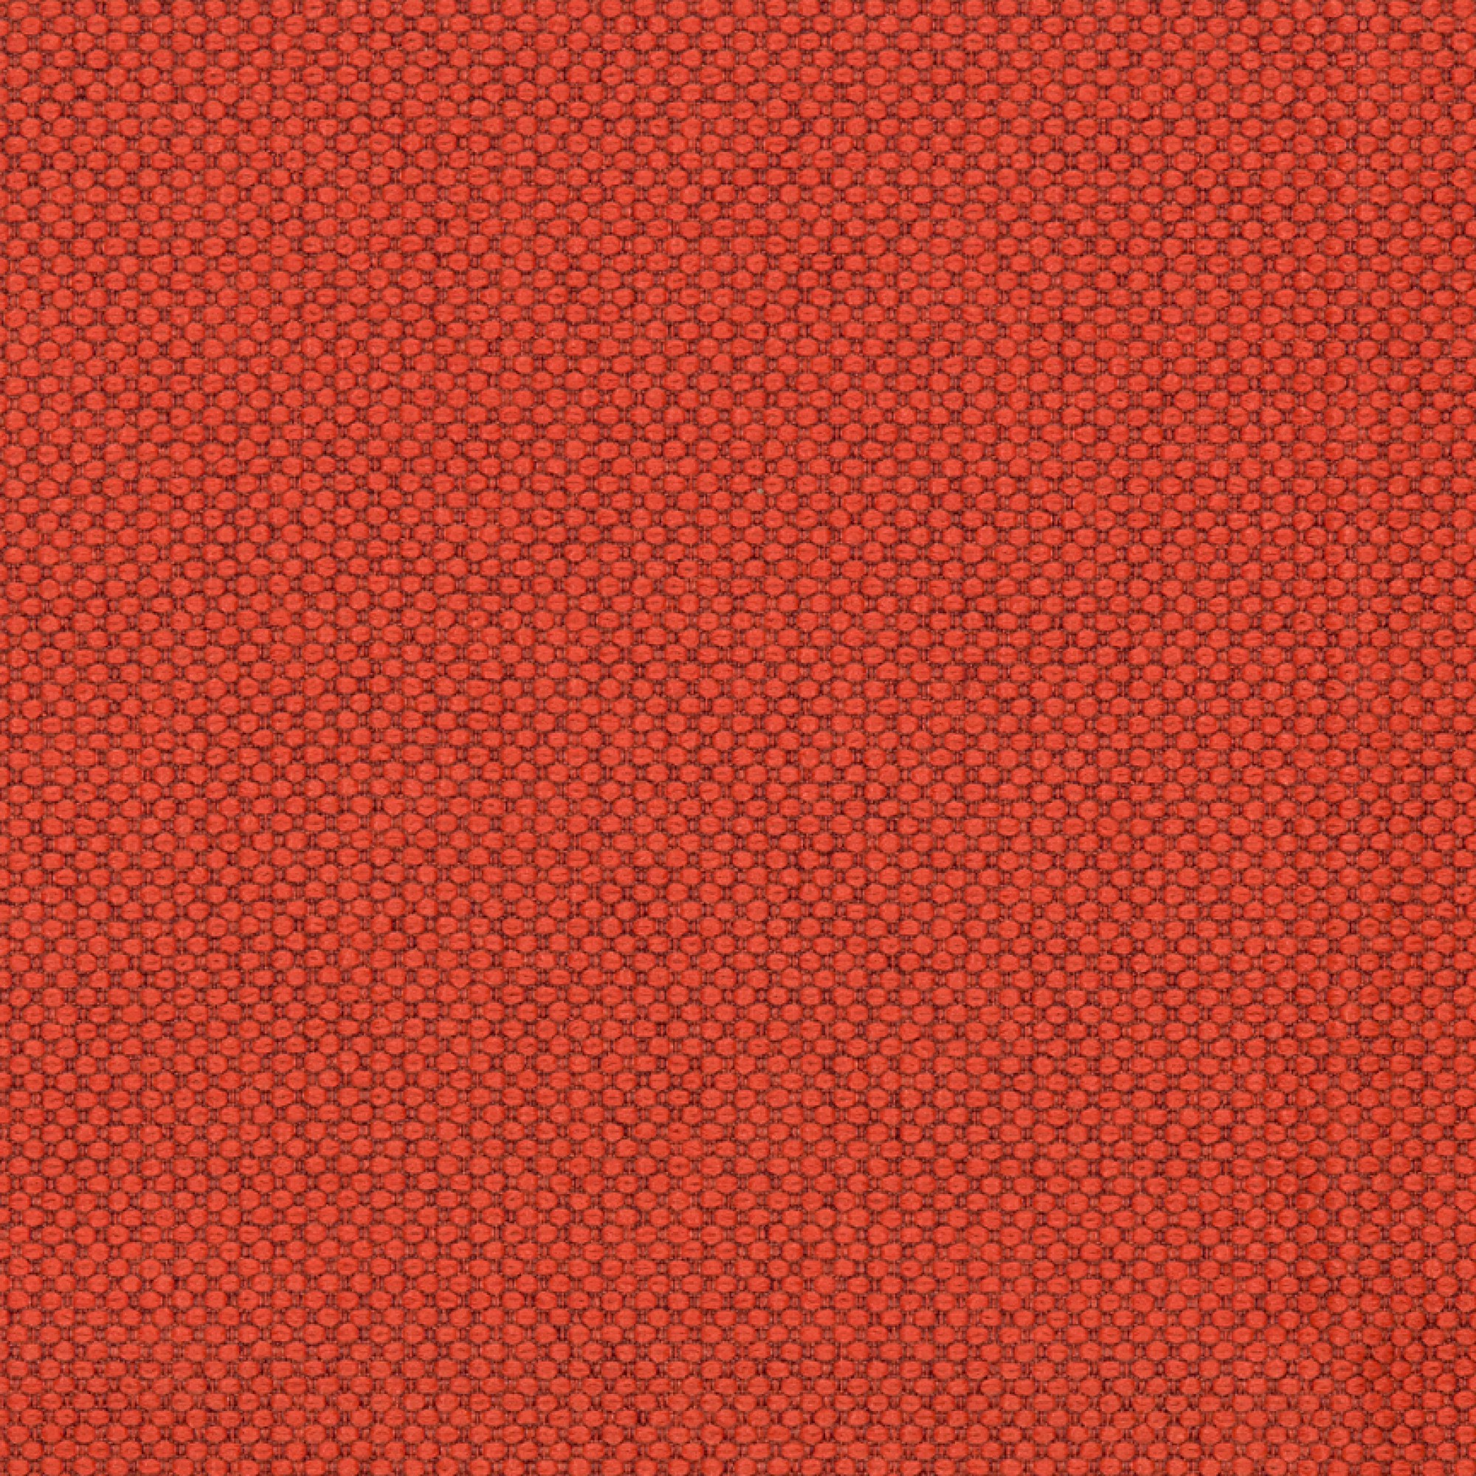 Fabric sample Merit 0037 red